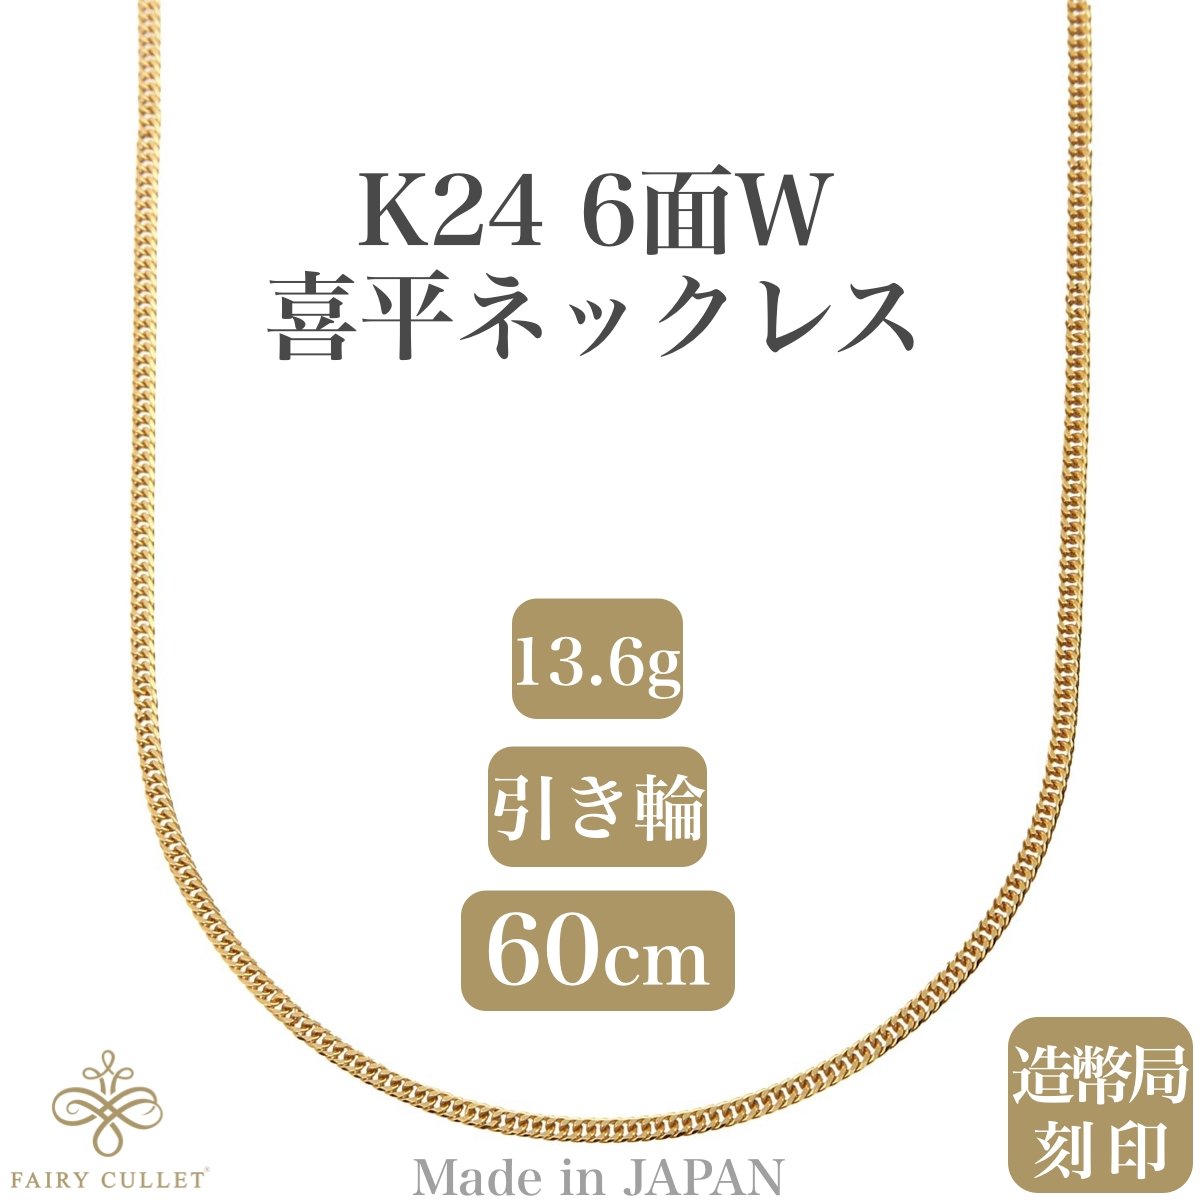 24金ネックレス K24 6面W喜平チェーン 日本製 純金 検定印 約13.6g 60cm 引き輪 - 喜平ジュエリーの専門店 FAIRY CULLET(フェアリーカレット)